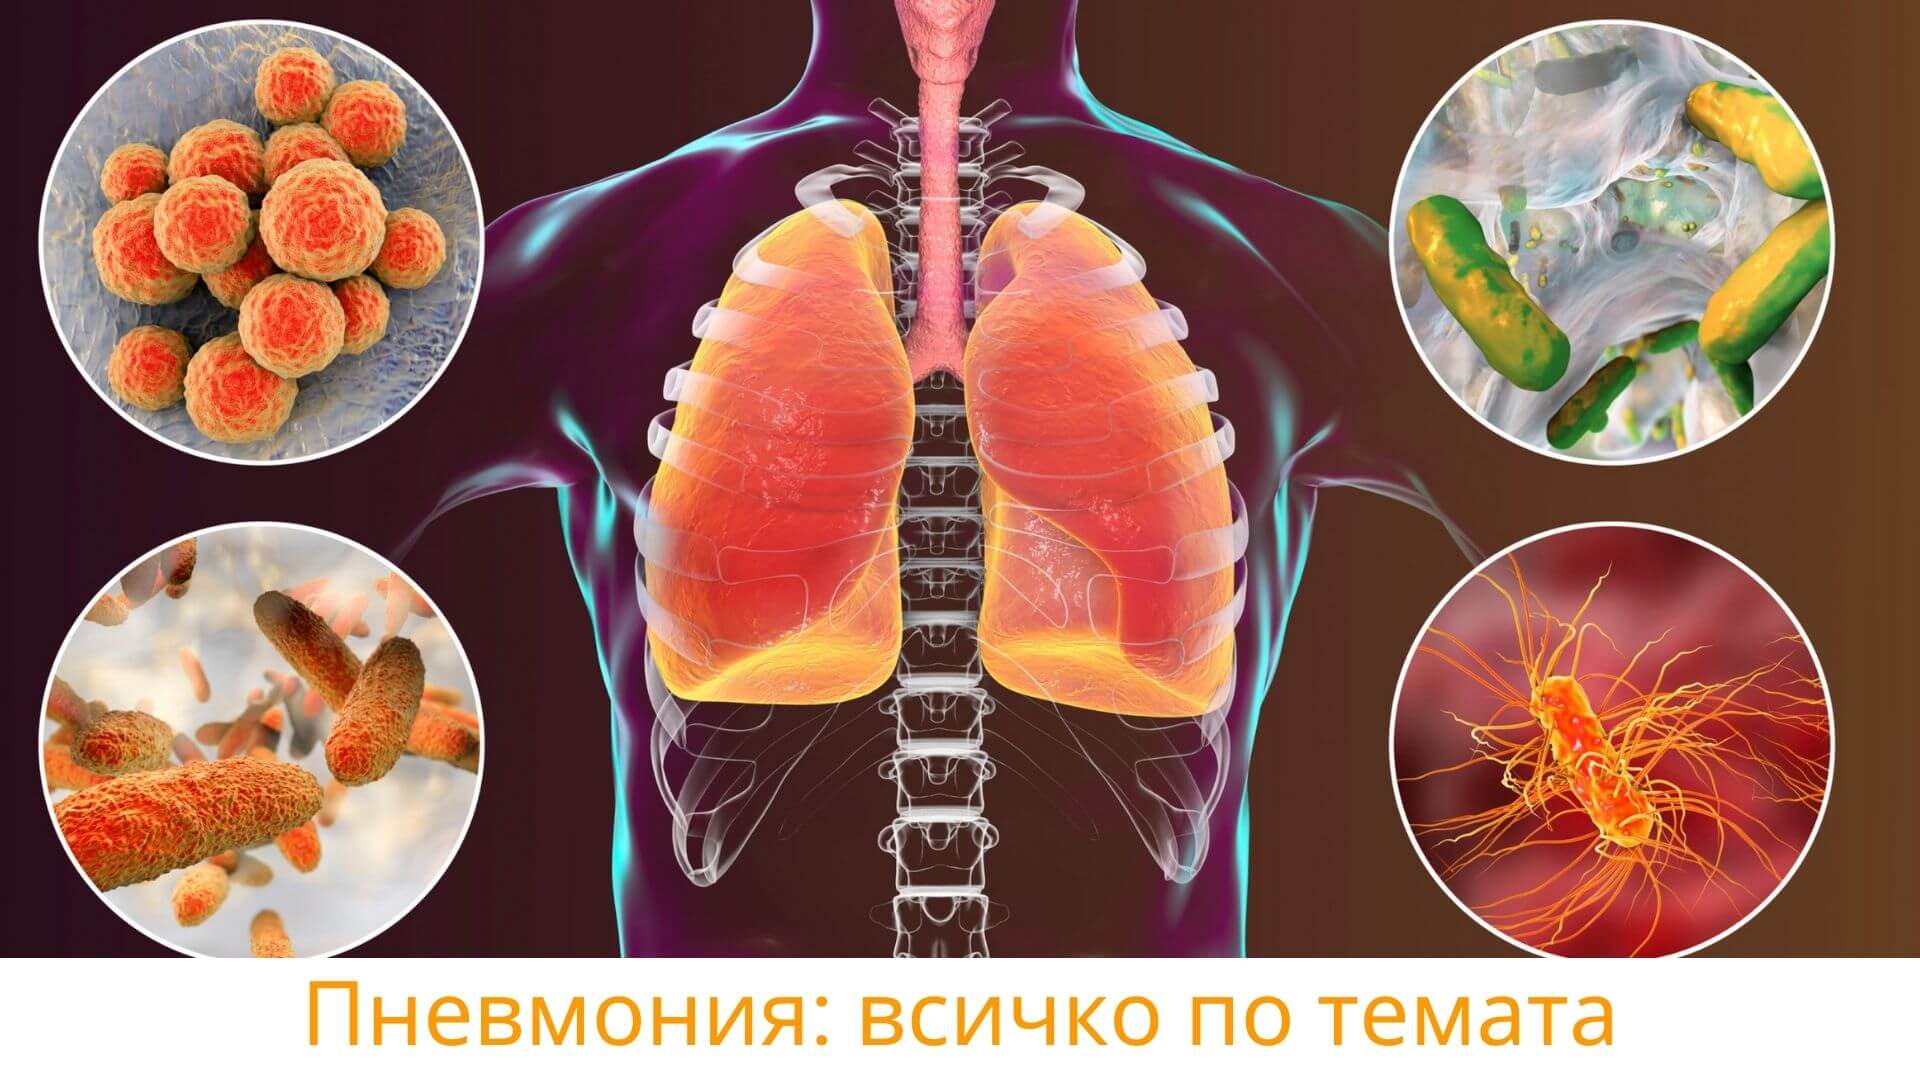 Пневмония изображение с бял дроб с различните видове пневмония